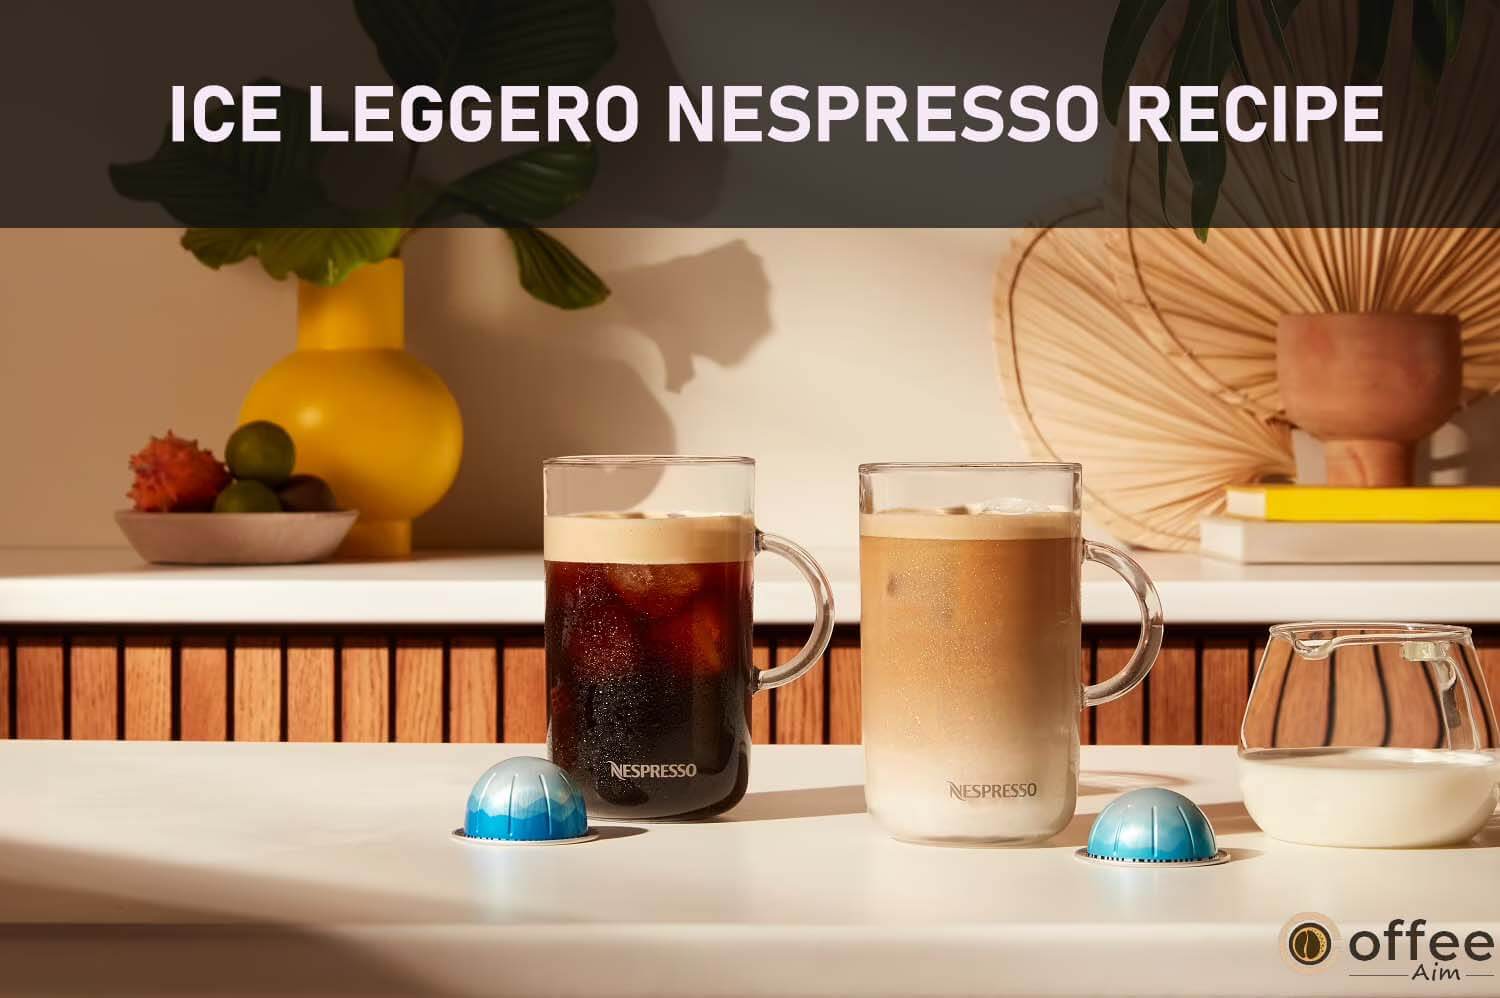 Featured image for the article "Ice Leggero Nespresso Recipe"